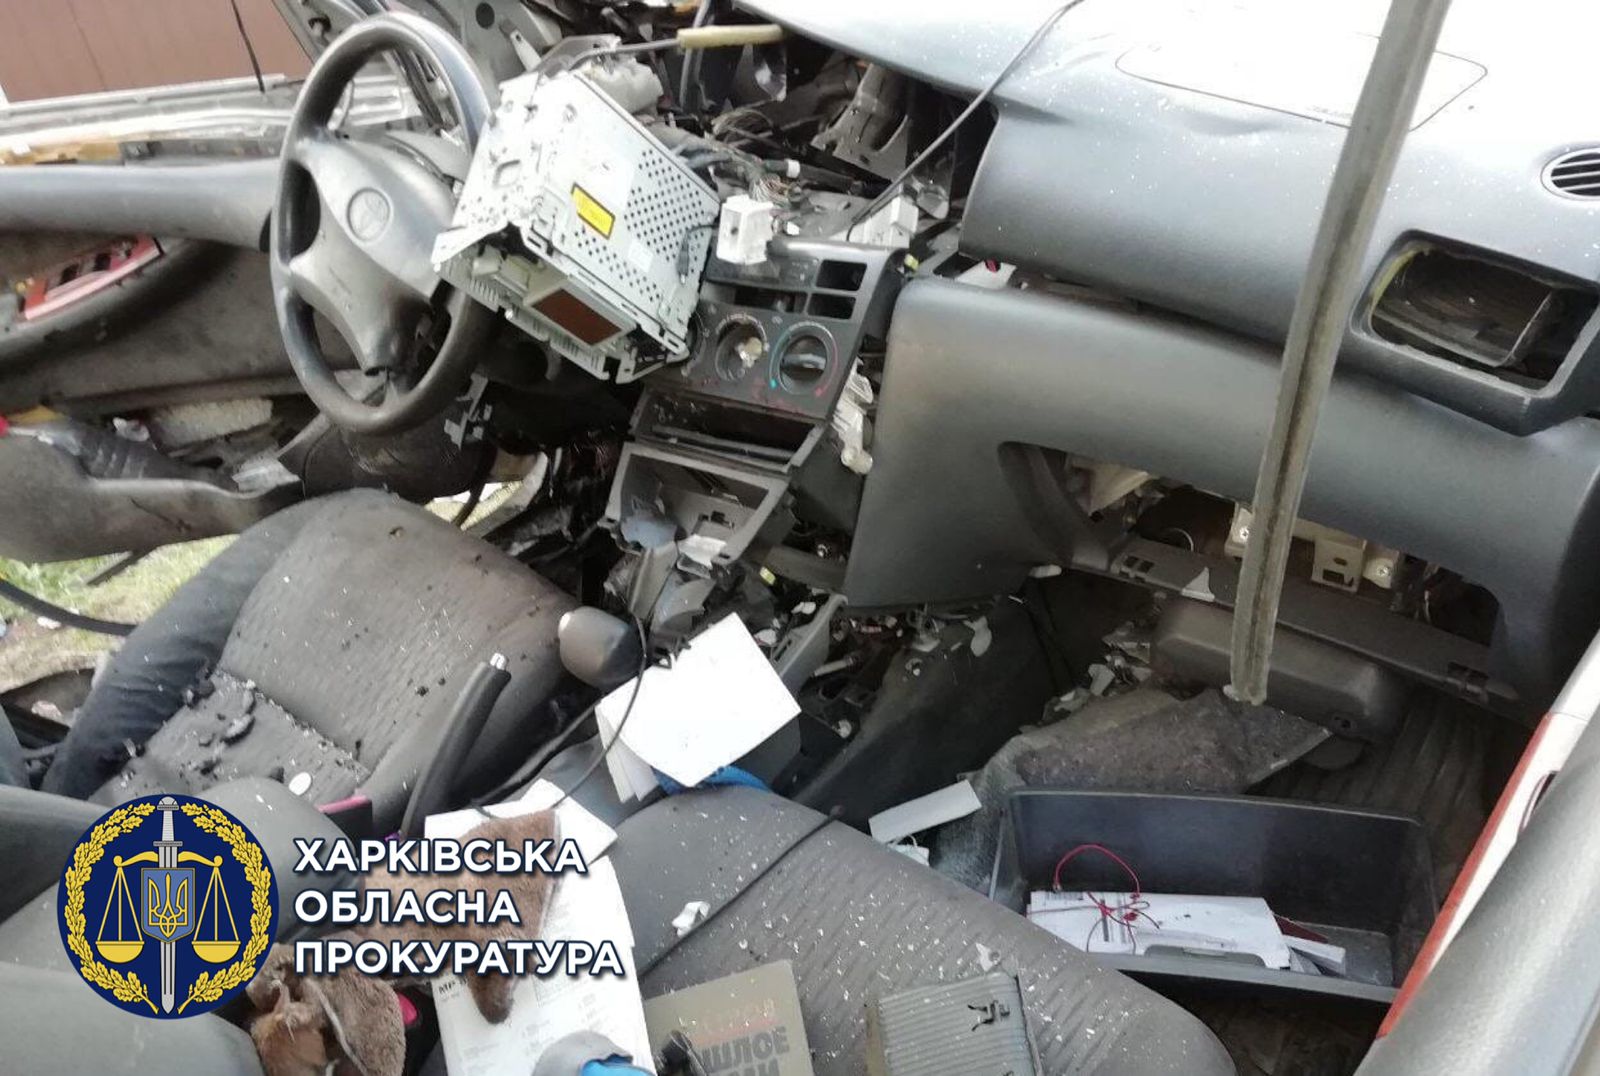 Харьковчанин, который бросил гранату в такси, проведет в тюрьме 15 лет